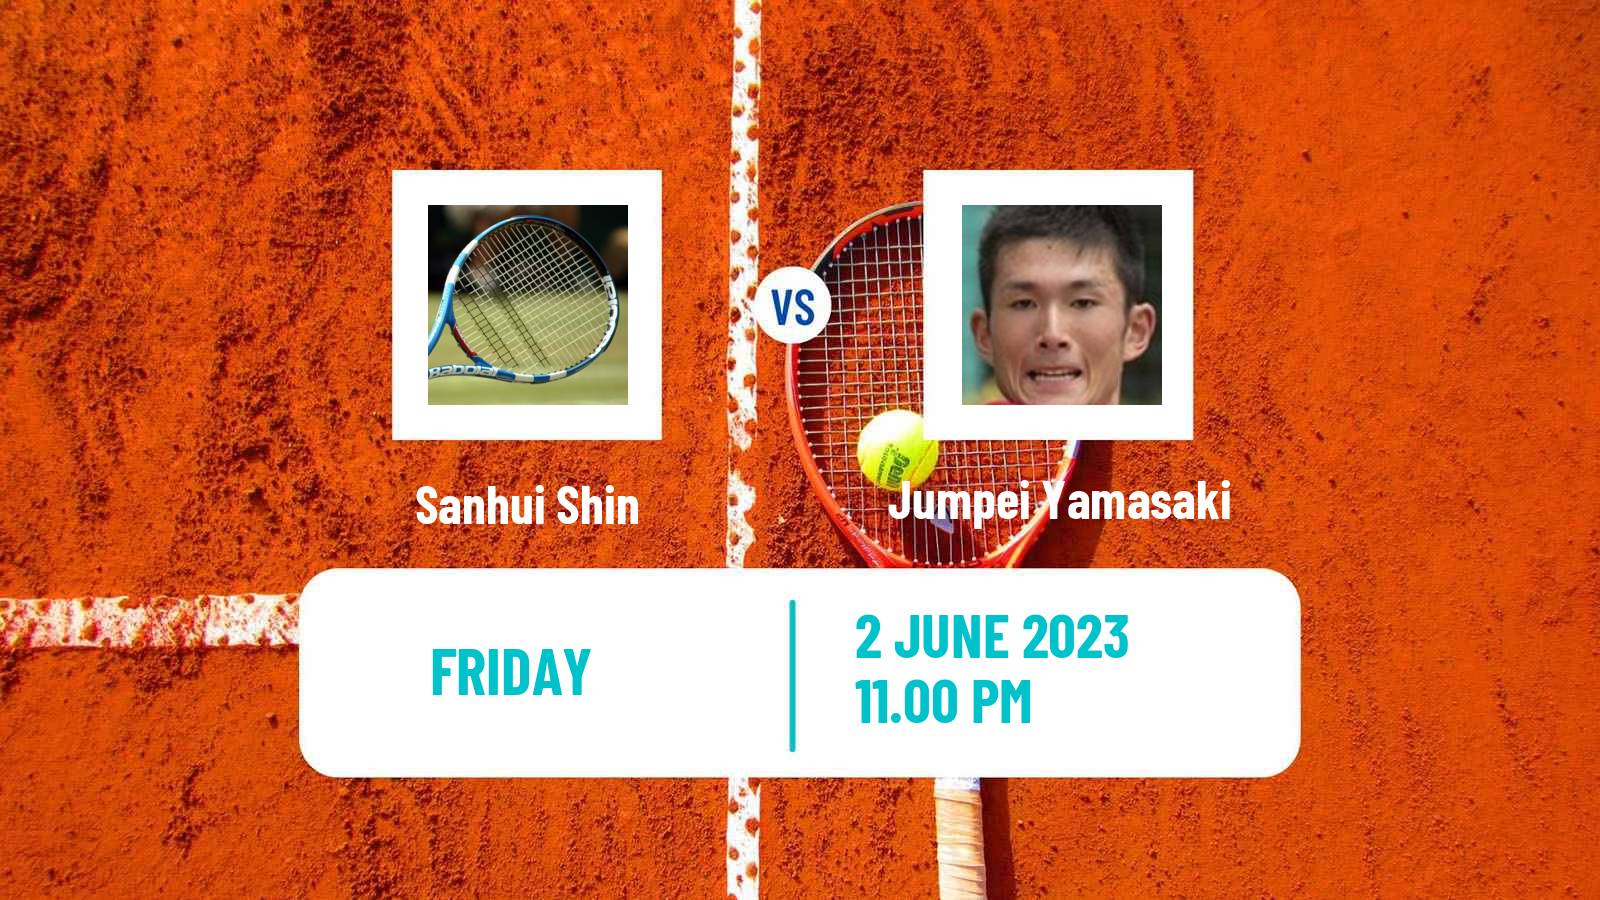 Tennis ITF M15 Karuizawa Men Sanhui Shin - Jumpei Yamasaki